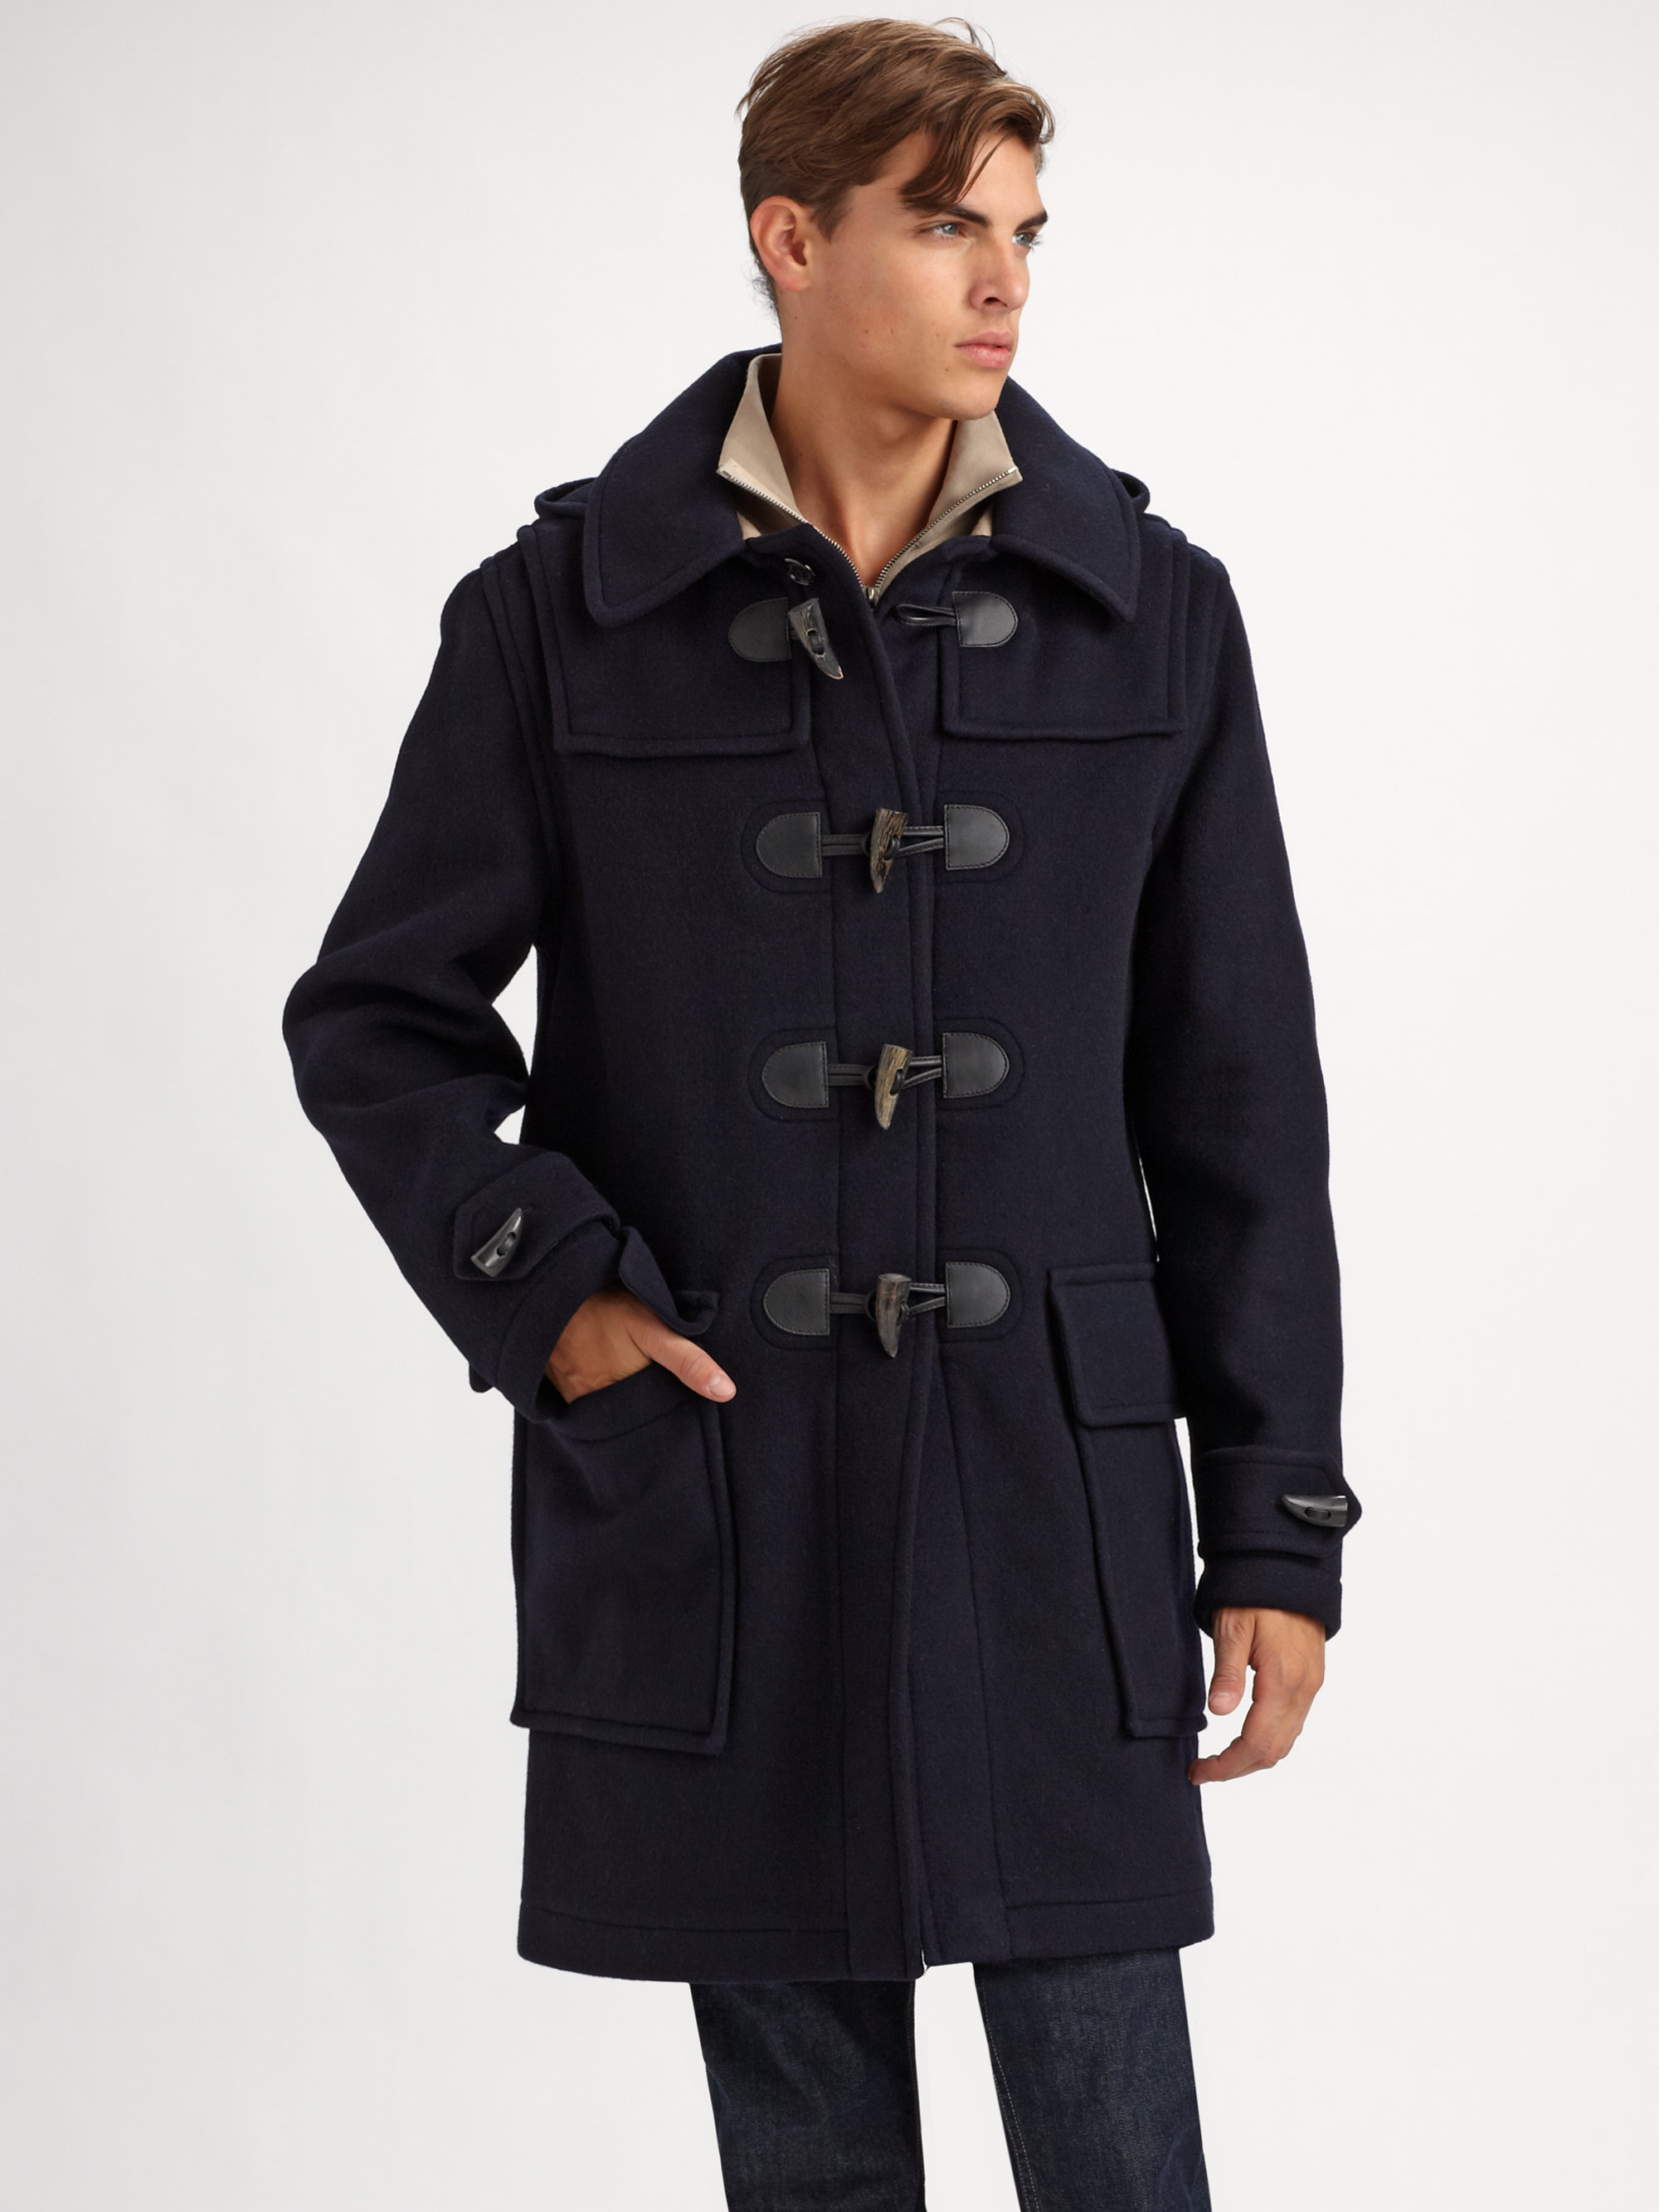 burberry men's coat